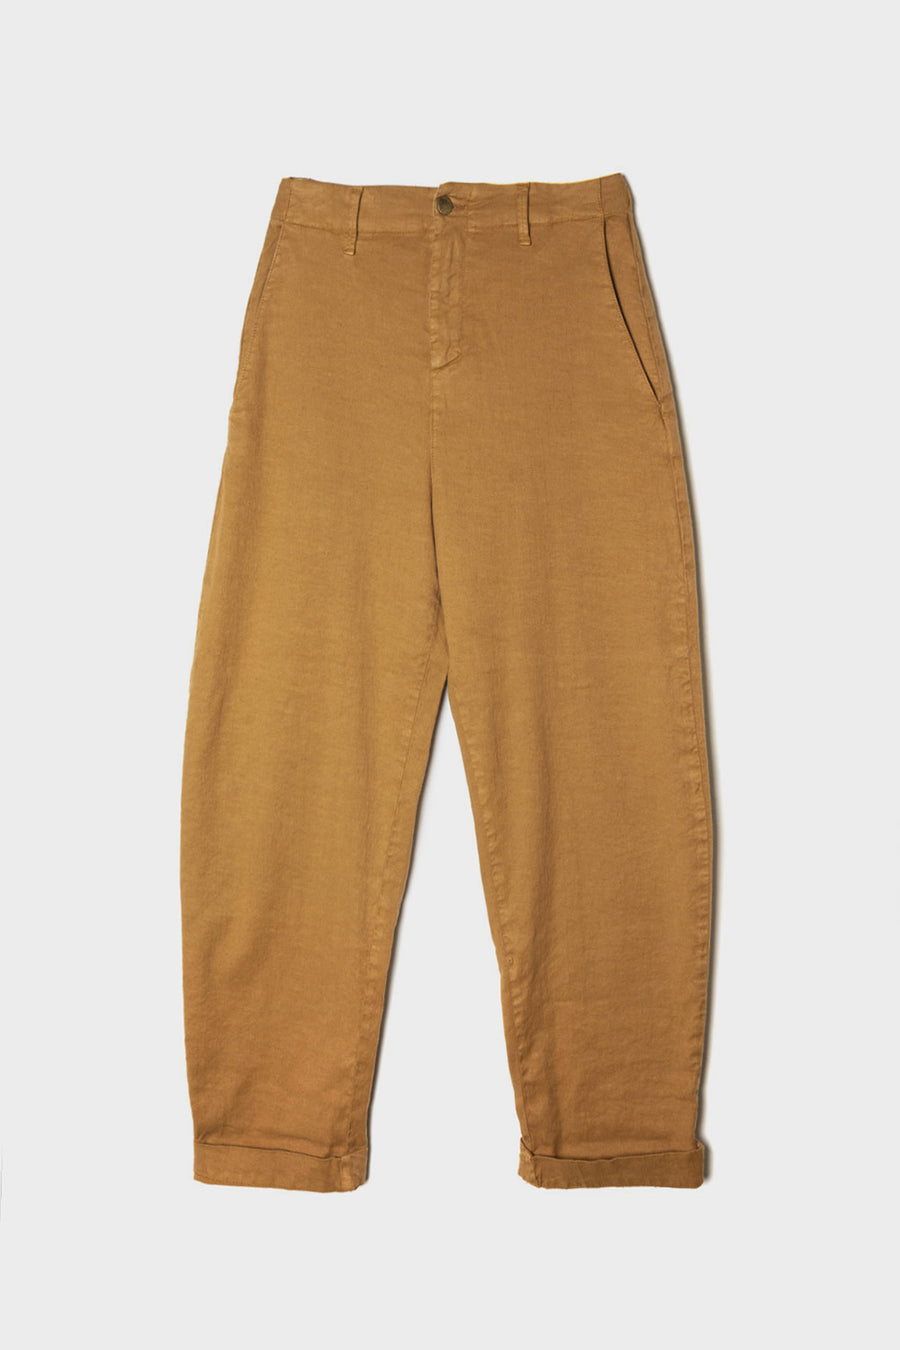 Pantalone PS in lino e cotone oro mia dyed